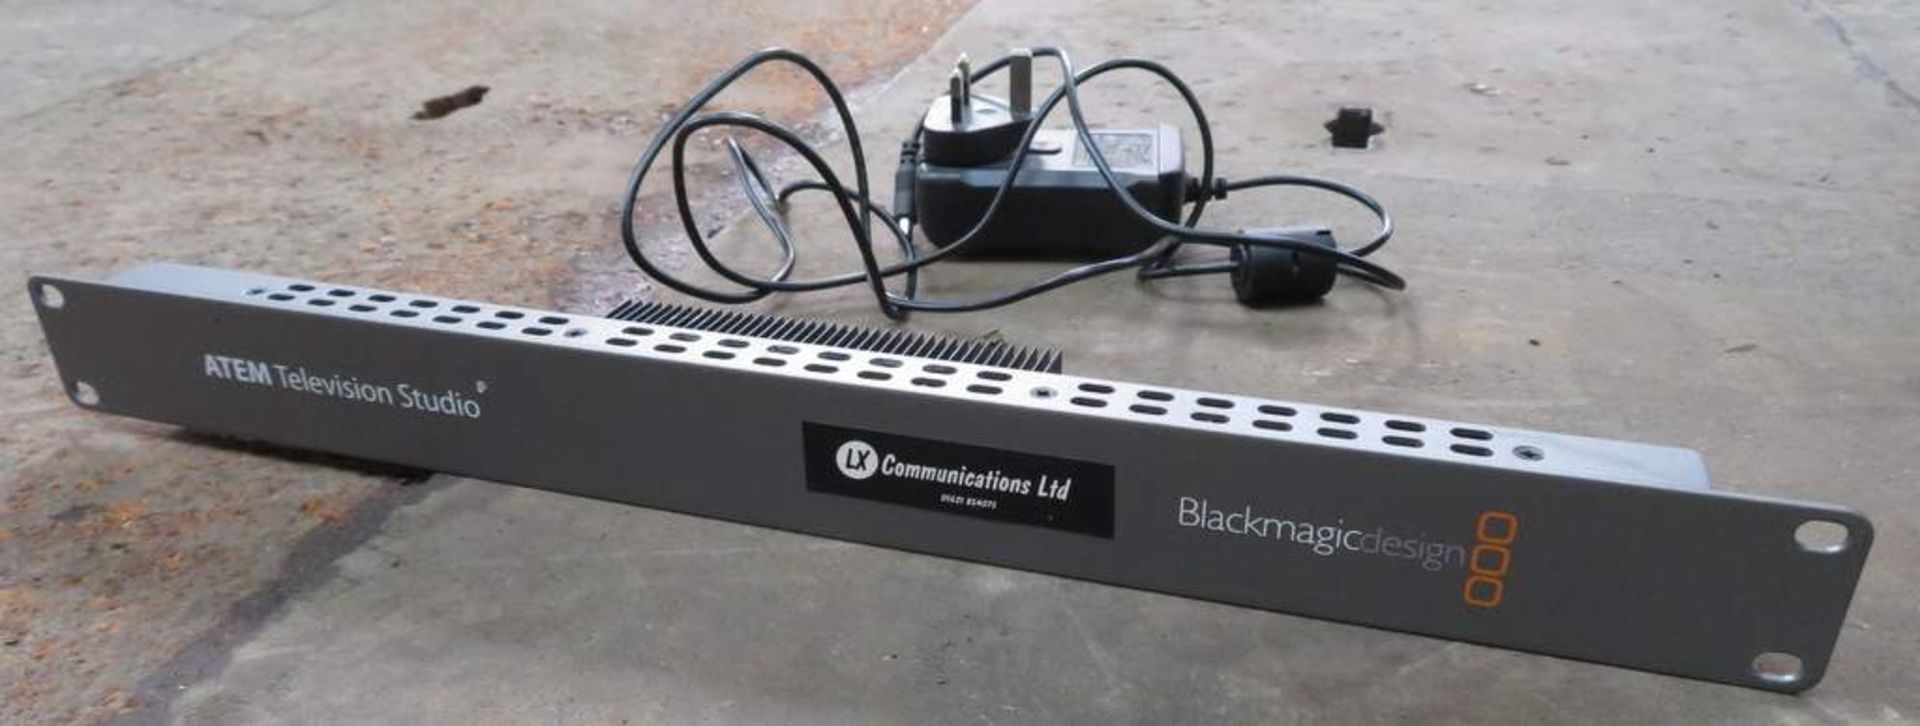 Blackmagic Design ATEM Television Studio SD/HD Vision Mixer. - Image 2 of 5